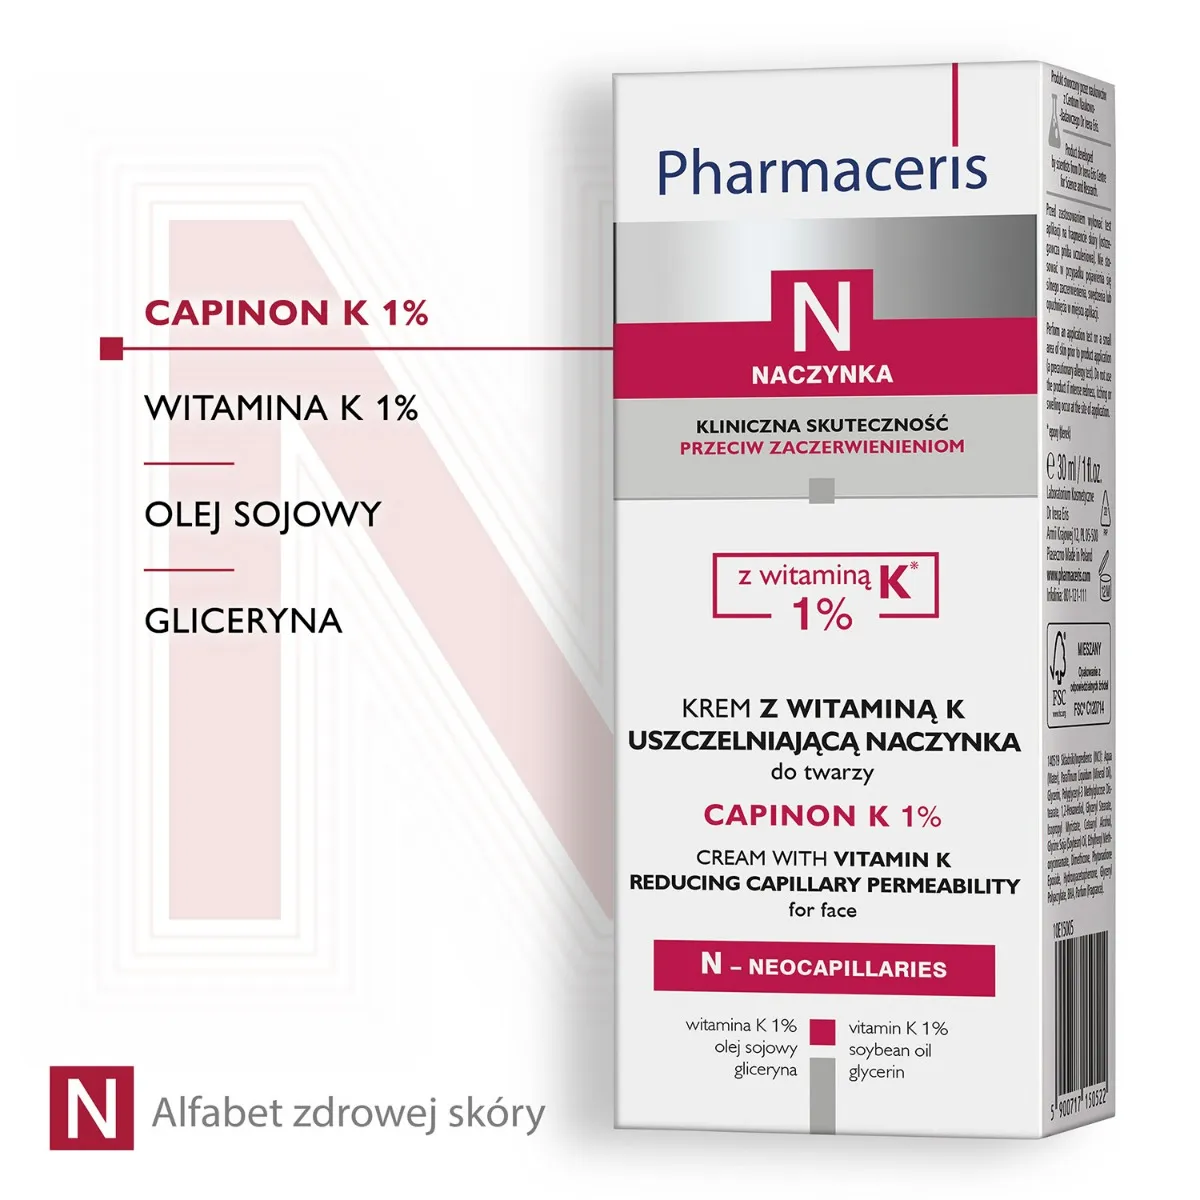 Pharmaceris N, naczynka, krem z witaminą K uszczelniającą naczynka, Capinon K 1% , 30 ml 